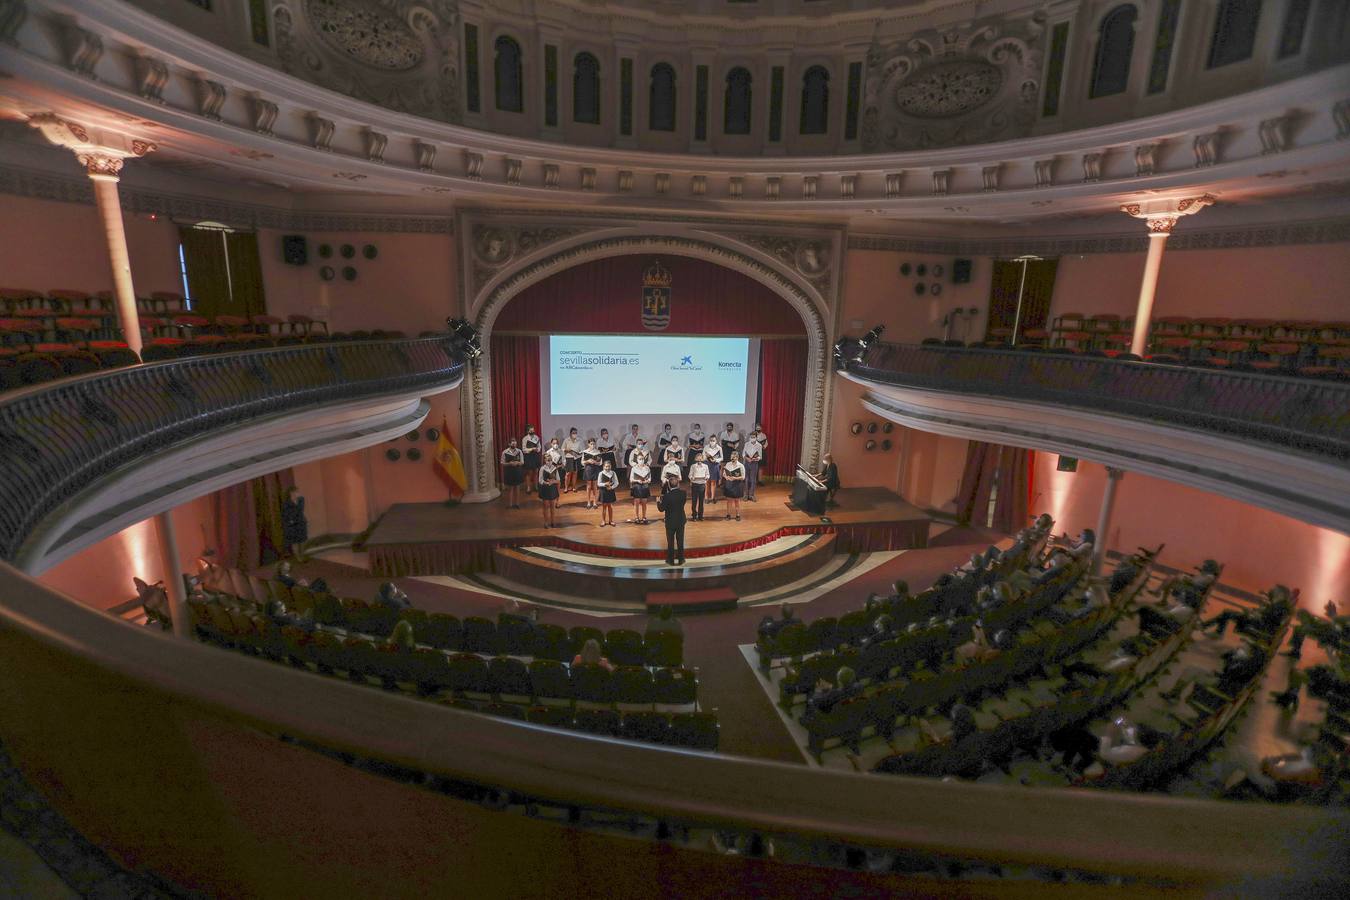 El concierto homenaje de la gala de Sevilla Solidaria, en imágenes